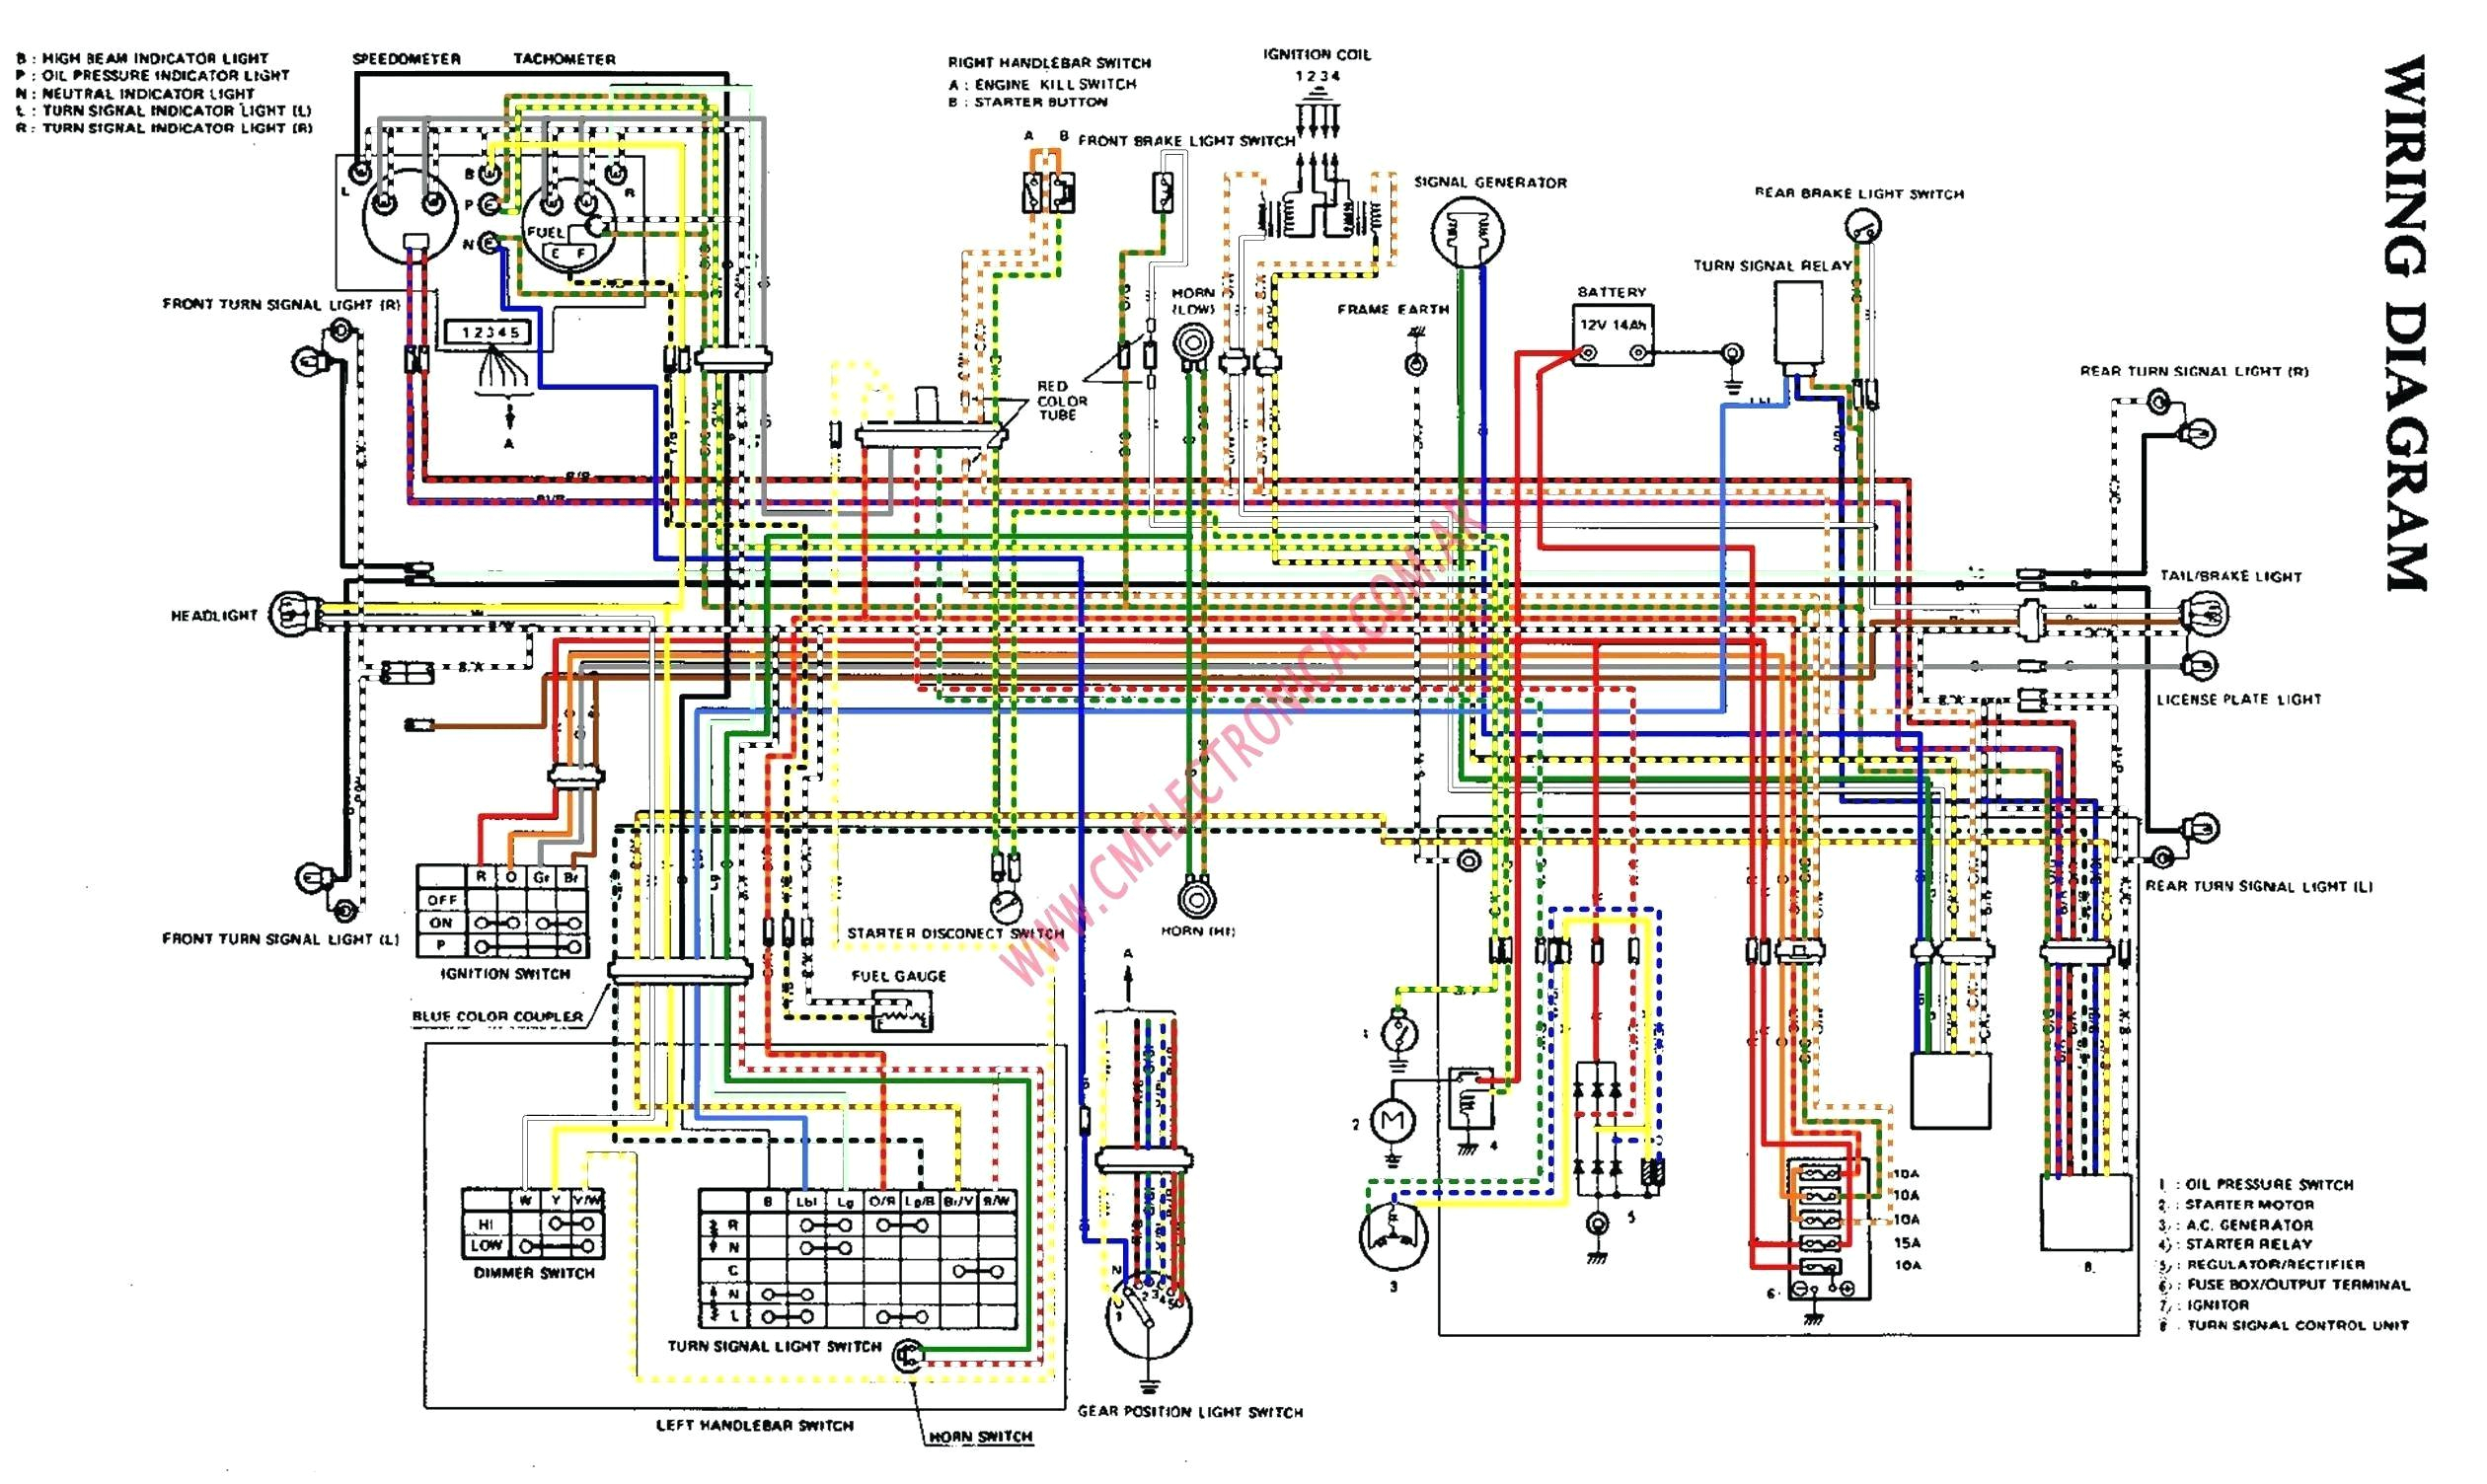 suzuki gs450 wiring diagram wiring diagramsuzuki gs550 wiring diogram wiring diagramsuzuki b200 wiring diagram wiring diagramsuzuki